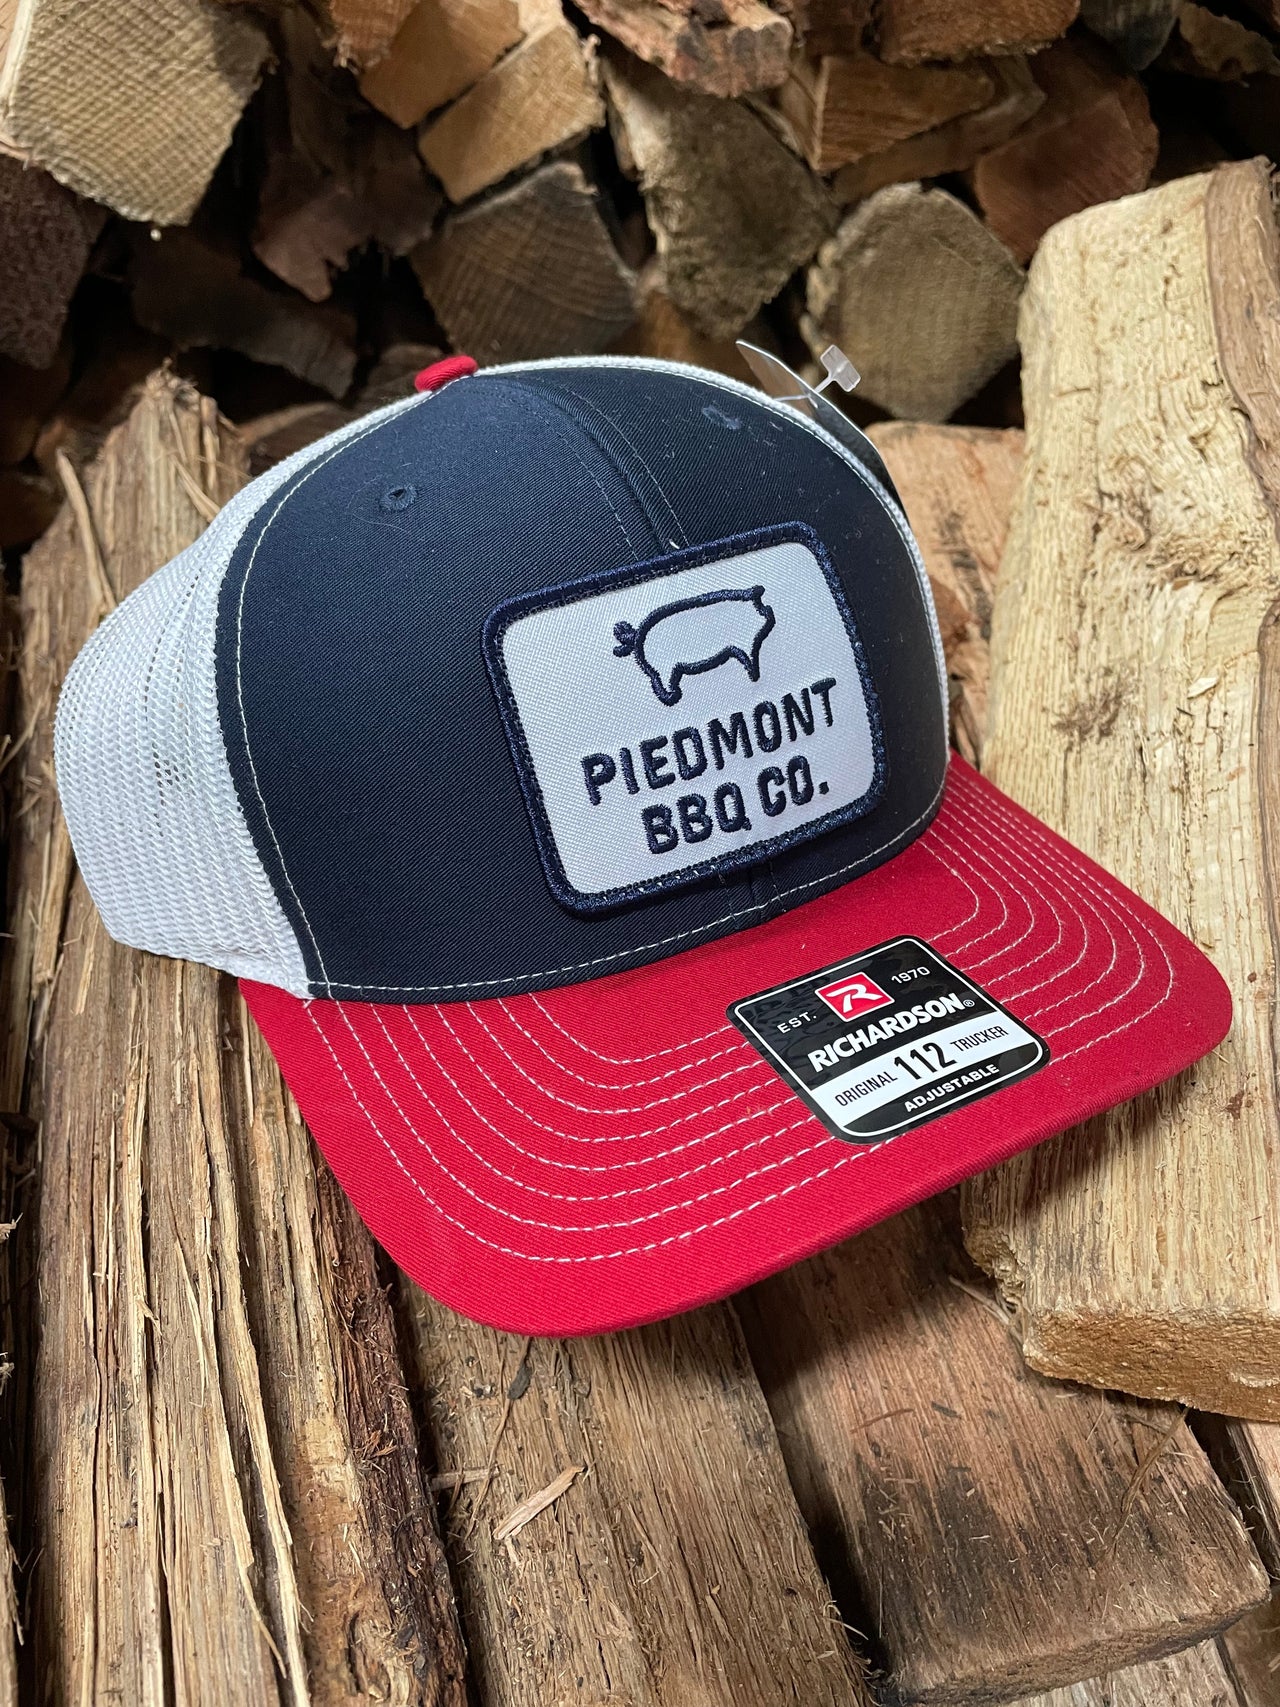 PBBQ Hats - piedmont bbq